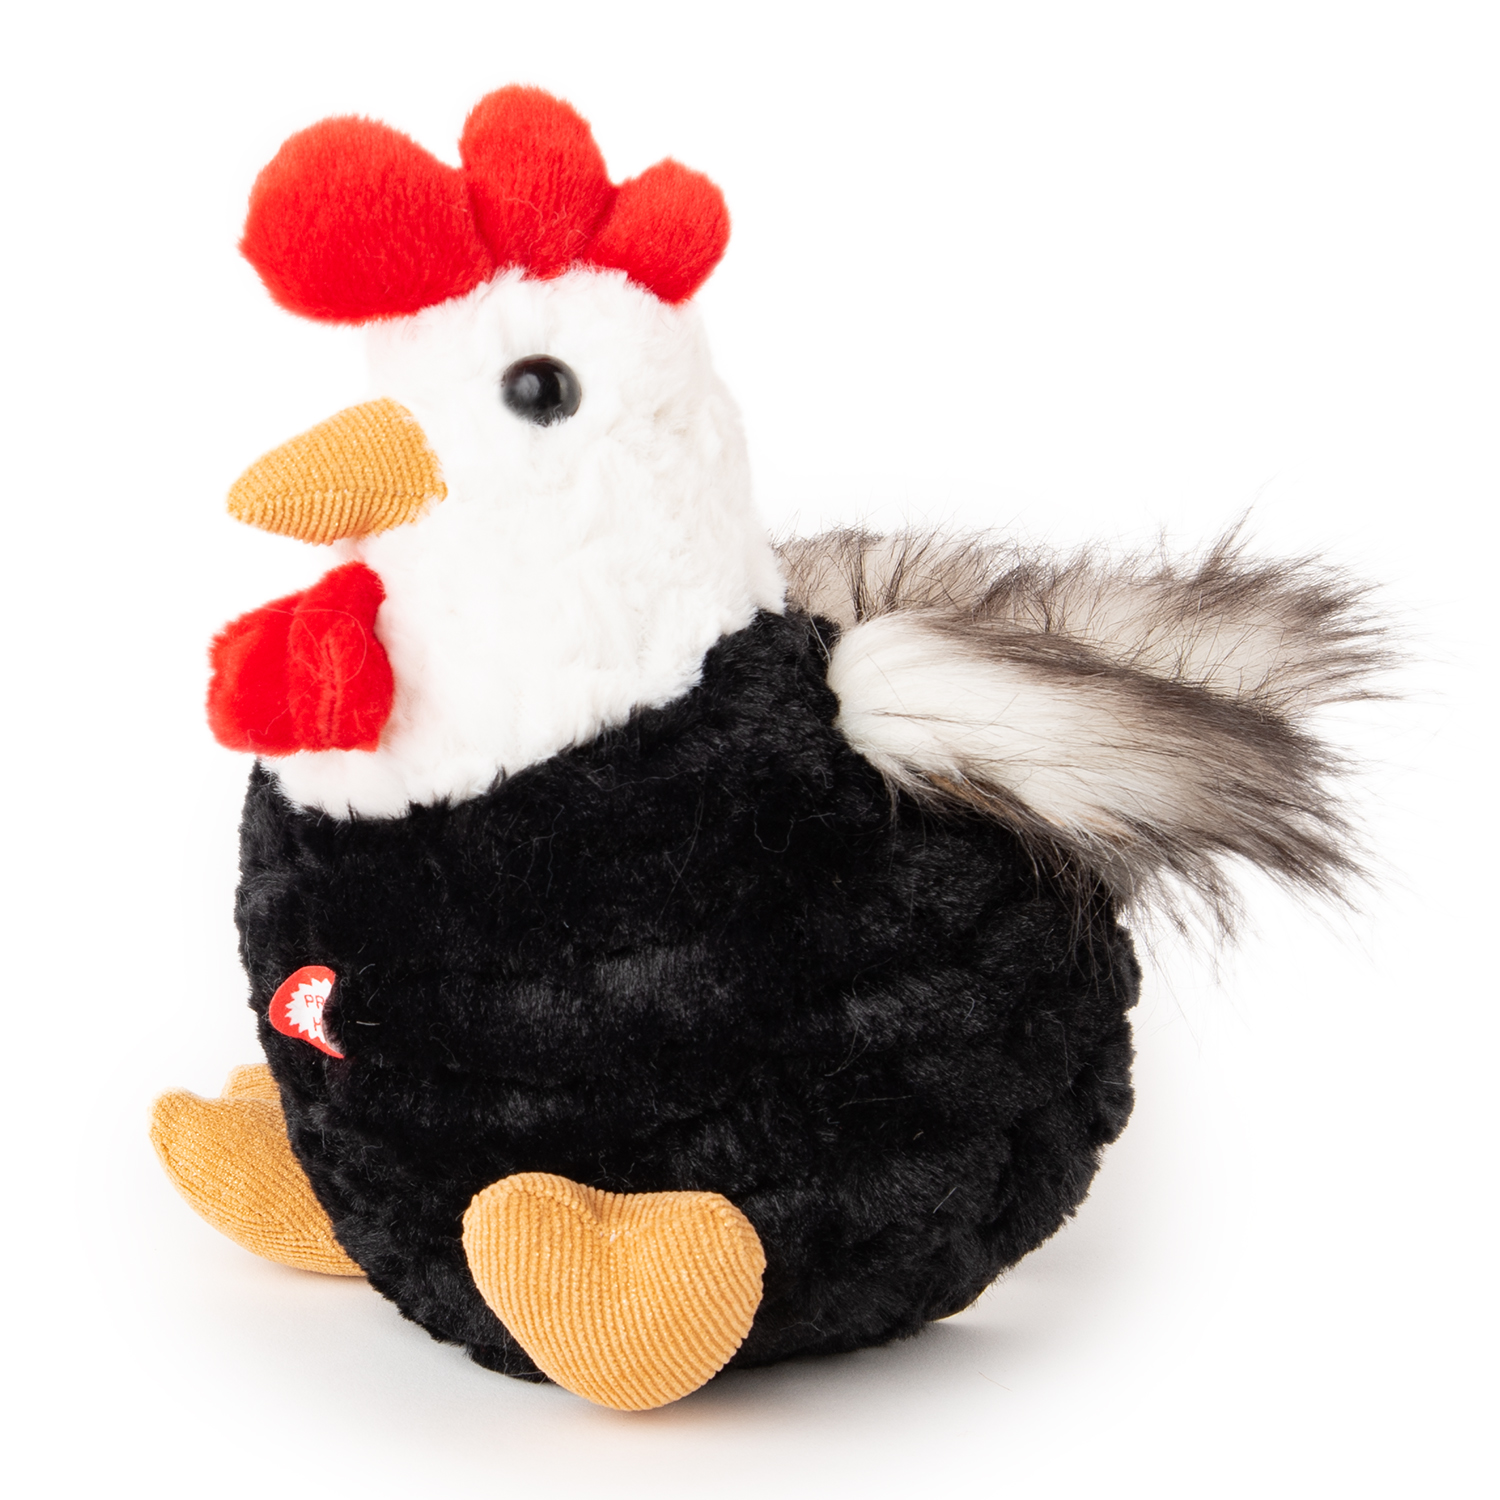 Chicken with sound - Black